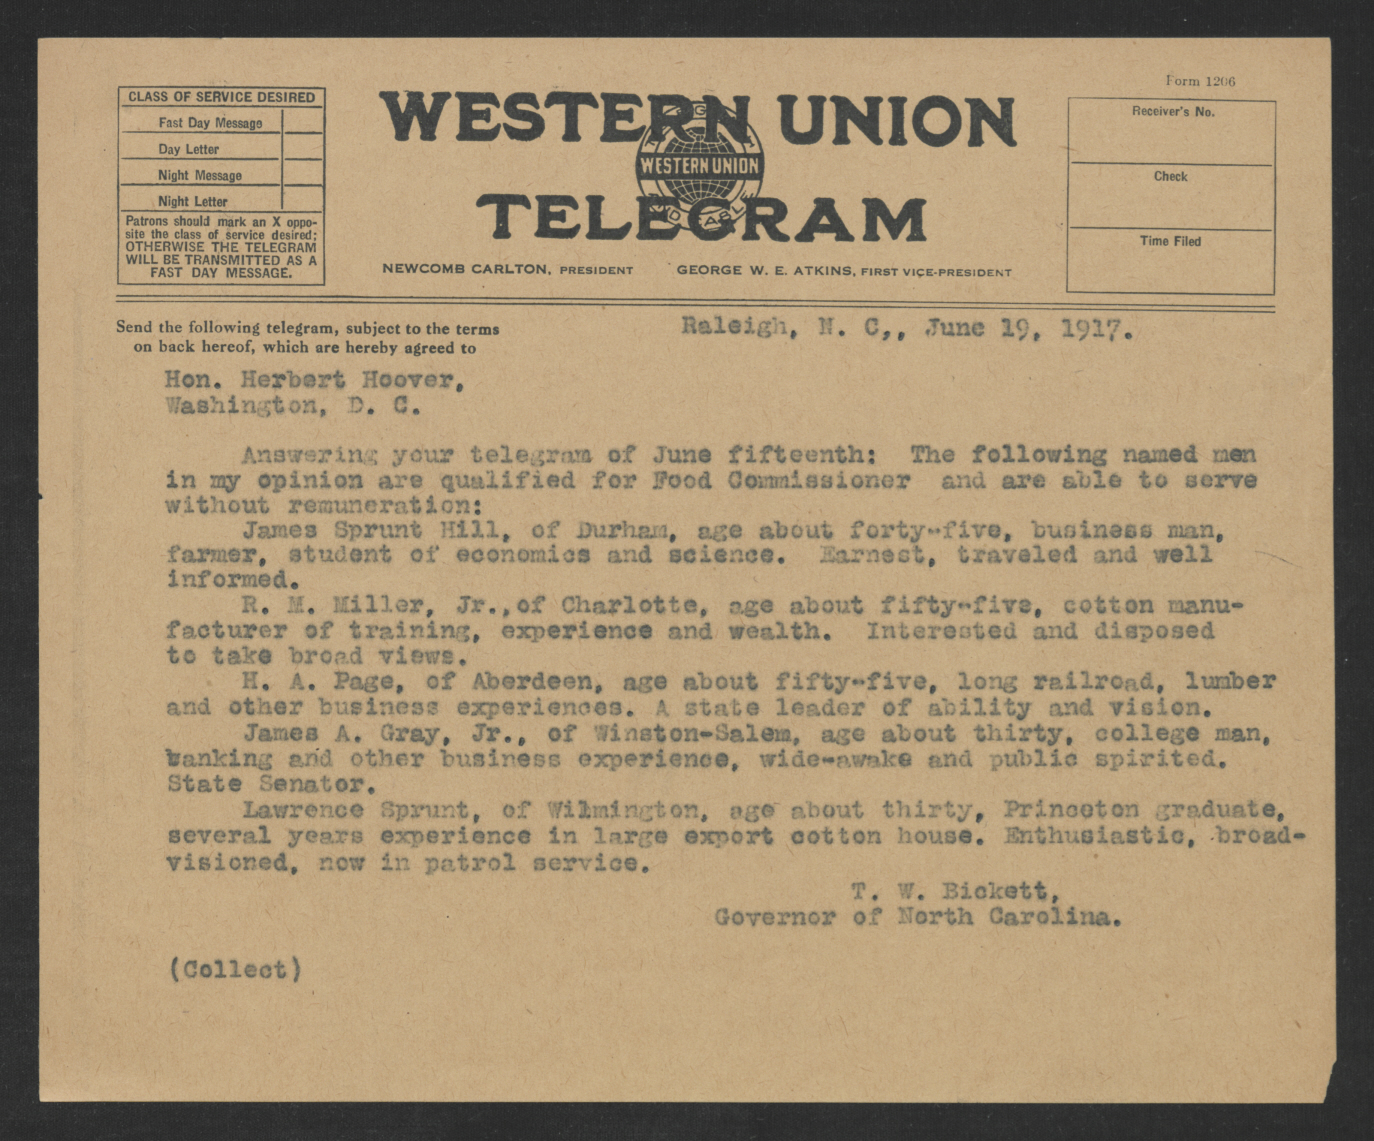 Telegram from Thomas W. Bickett to Herbert C. Hoover, June 19, 1917